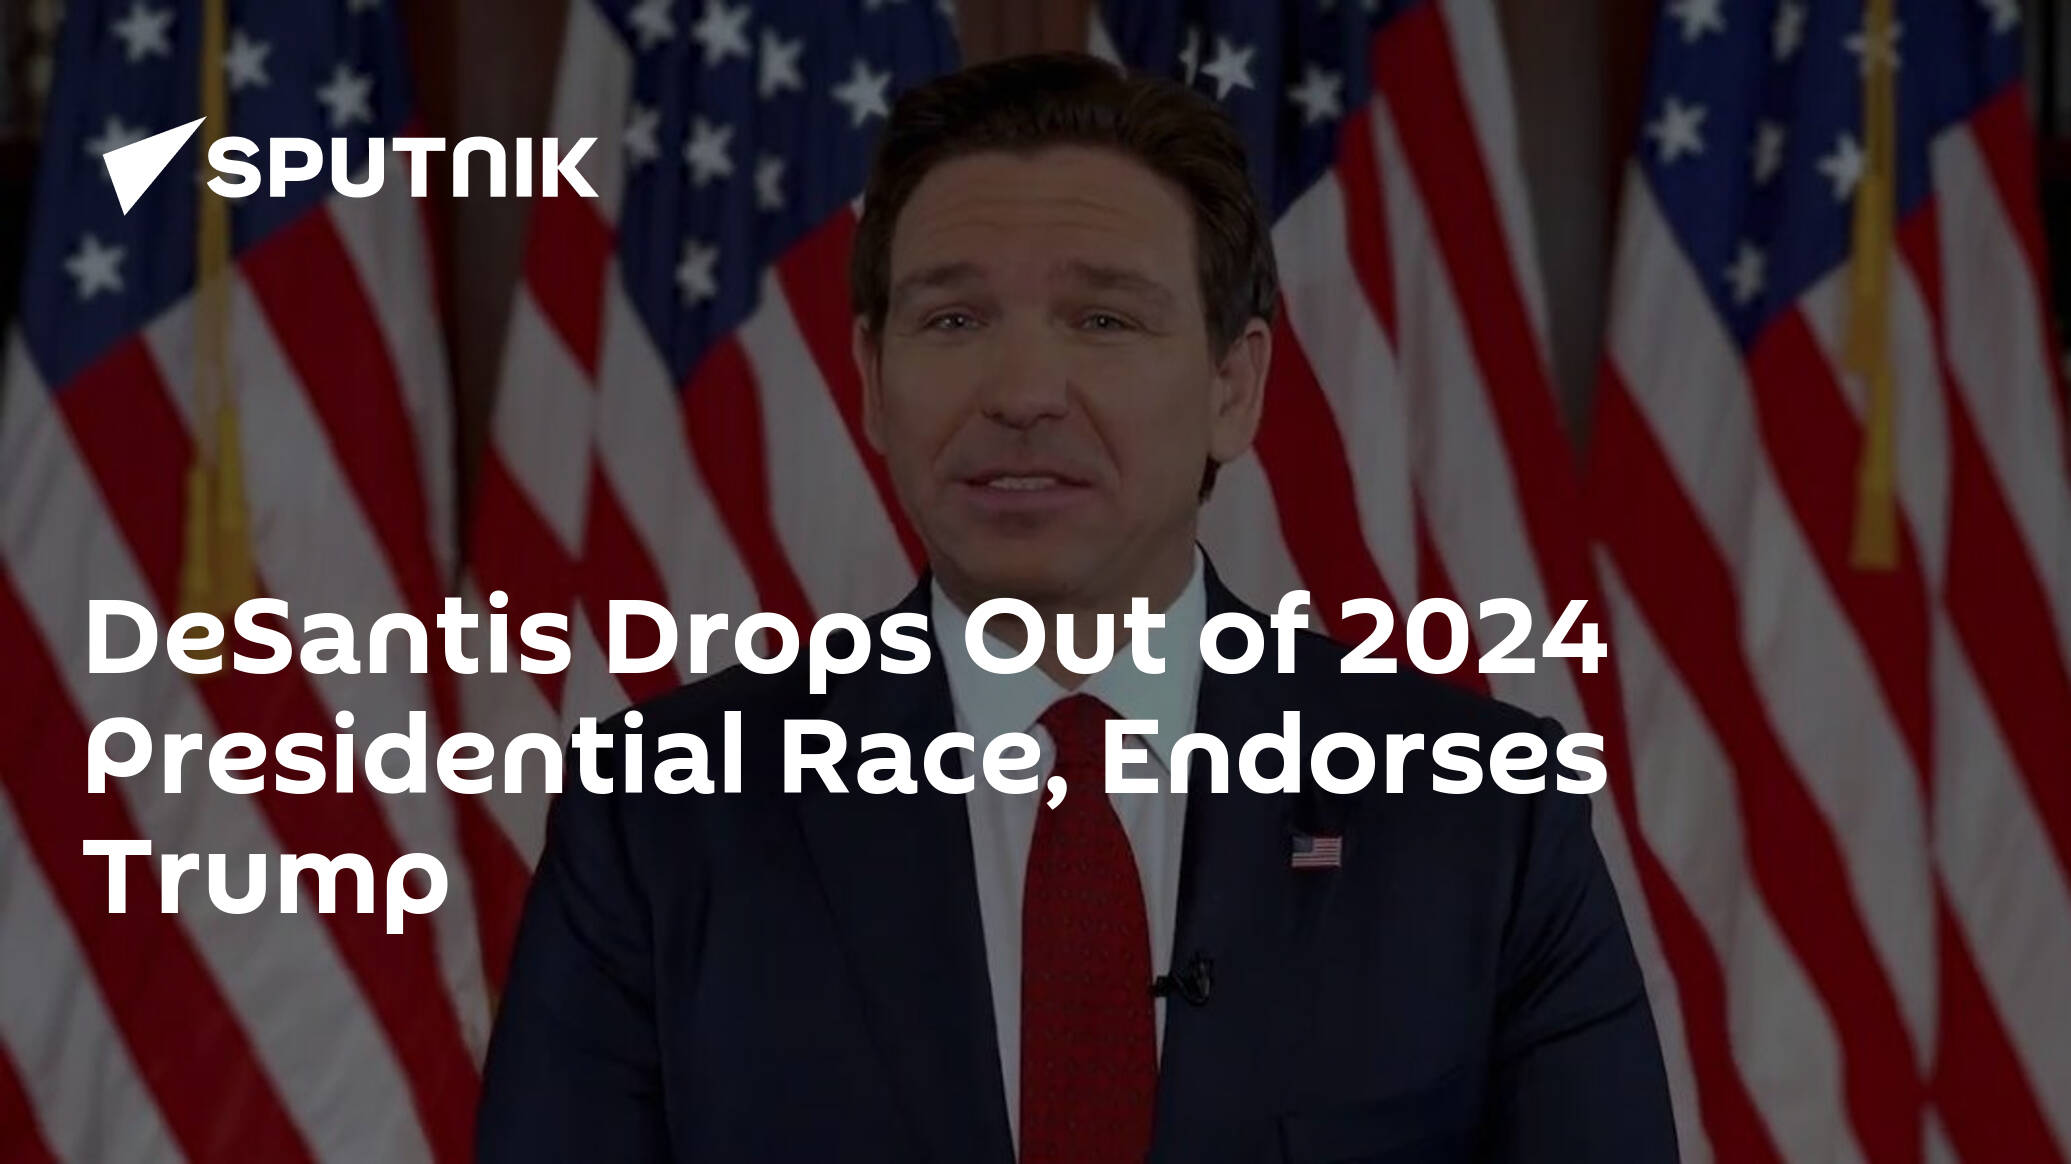 DeSantis Drops Out of 2024 Presidential Race, Endorses Trump